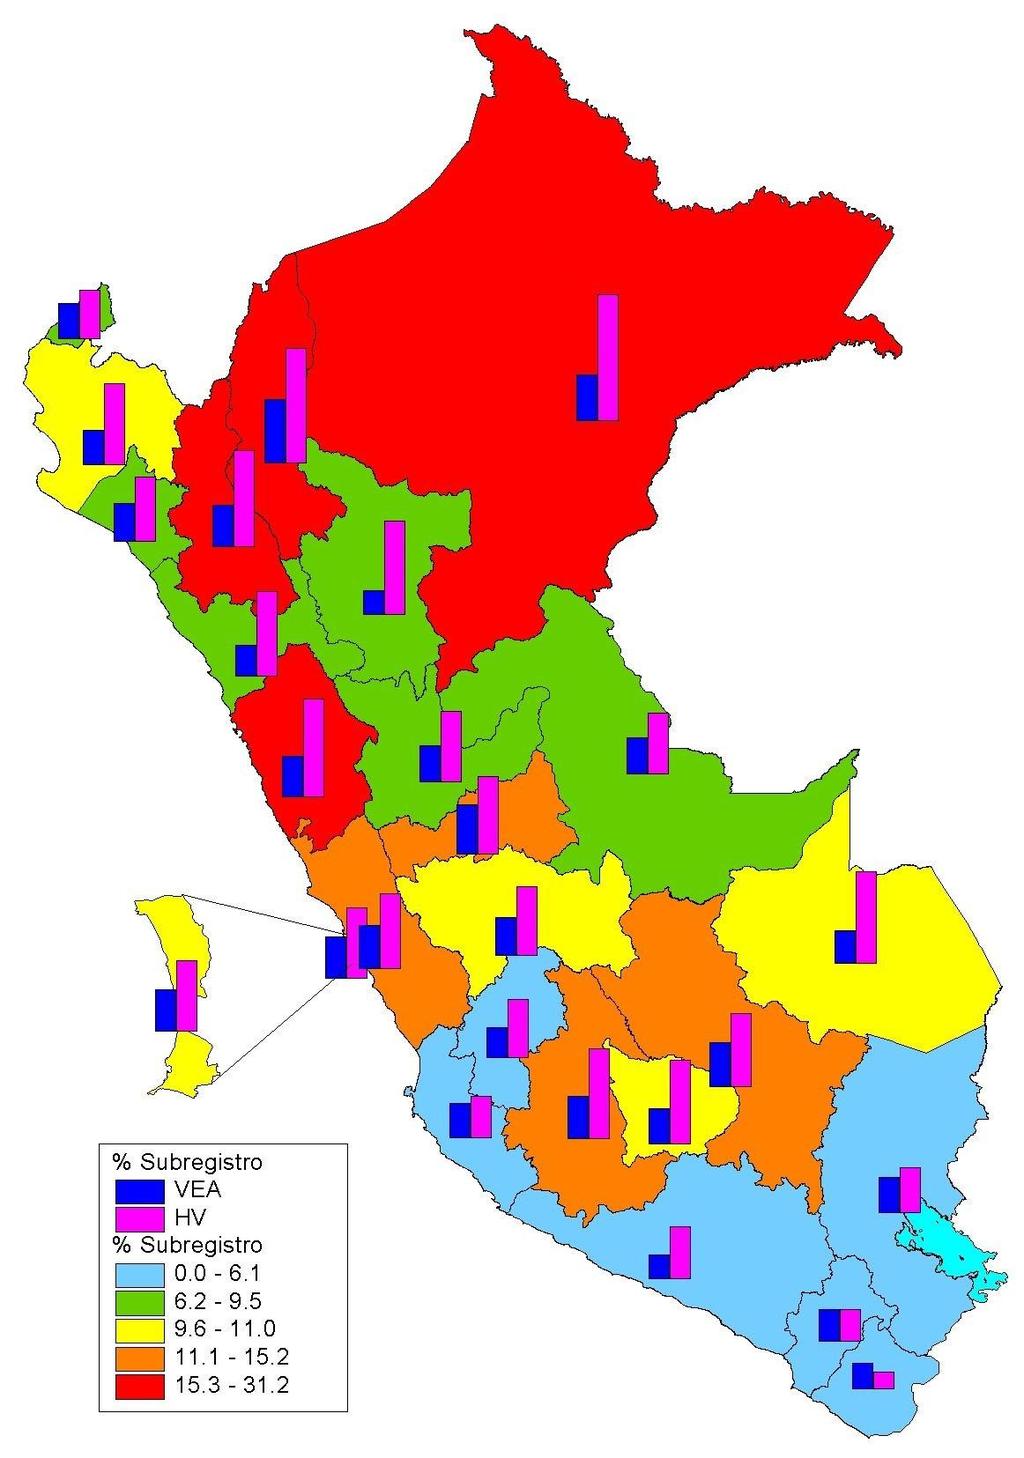 Distribución geográfica de subregistro de MM por departamentos.